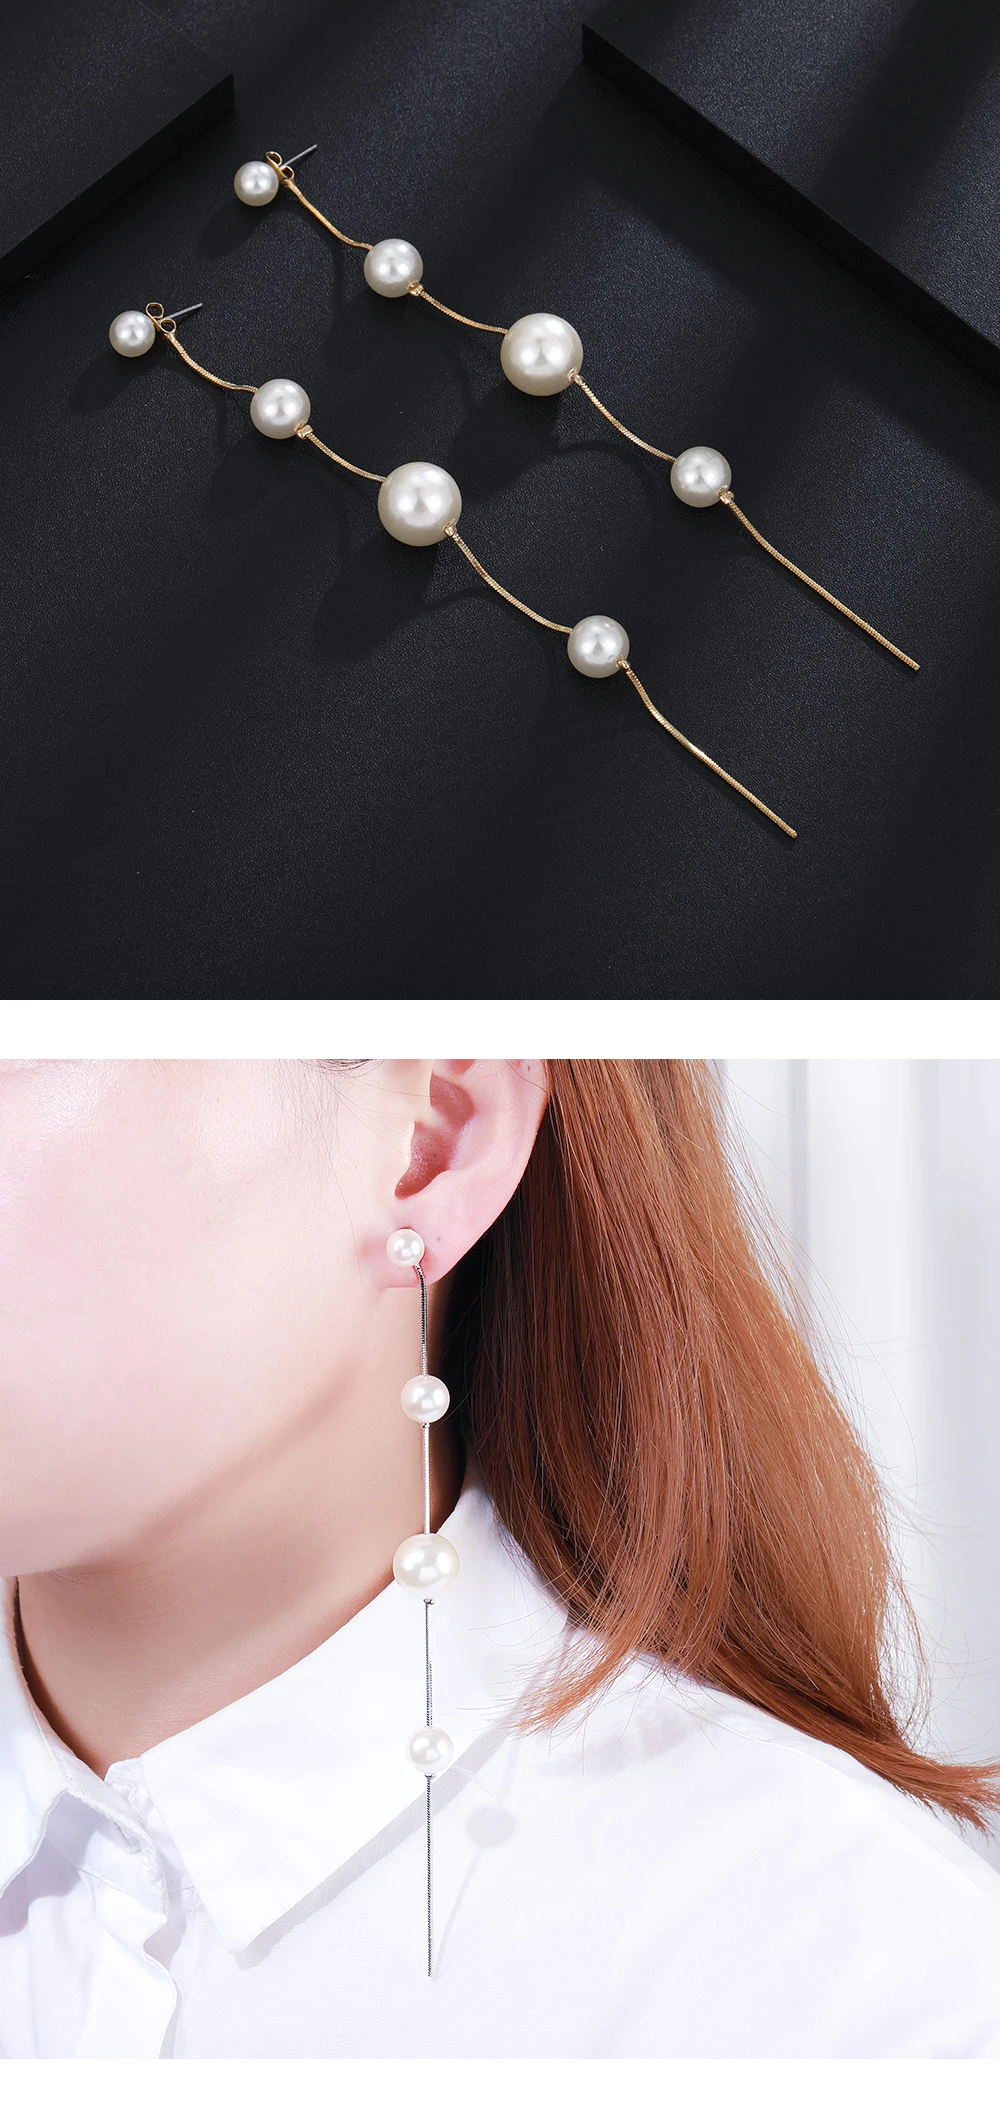 HanCheng новые модные жемчужные серьги с бисером Висячие струнные кисточки Серебряные длинные висячие серьги для женщин ювелирные изделия brincos bijoux